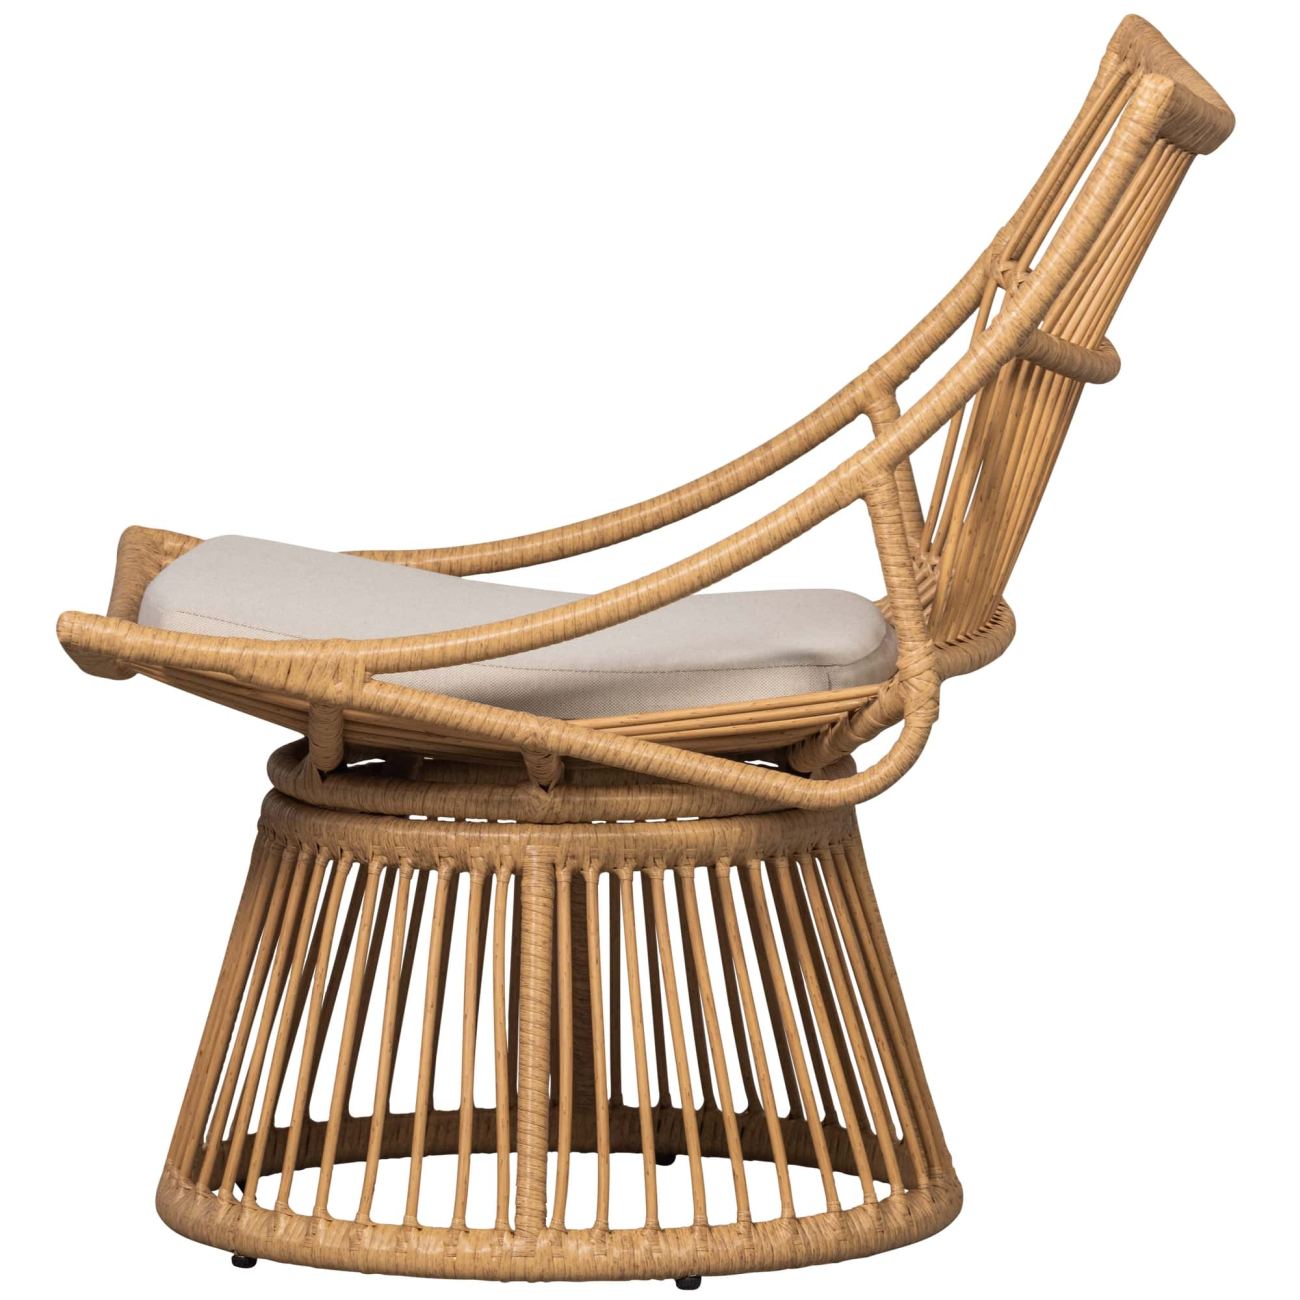 Der Gartensessel Alatna überzeugt mit seinem modernen Design. Gefertigt wurde er aus Geflecht, welches einen natürlichen Farbton besitzt. Der Sessel besitzt eine Sitzhöhe von 41 cm.